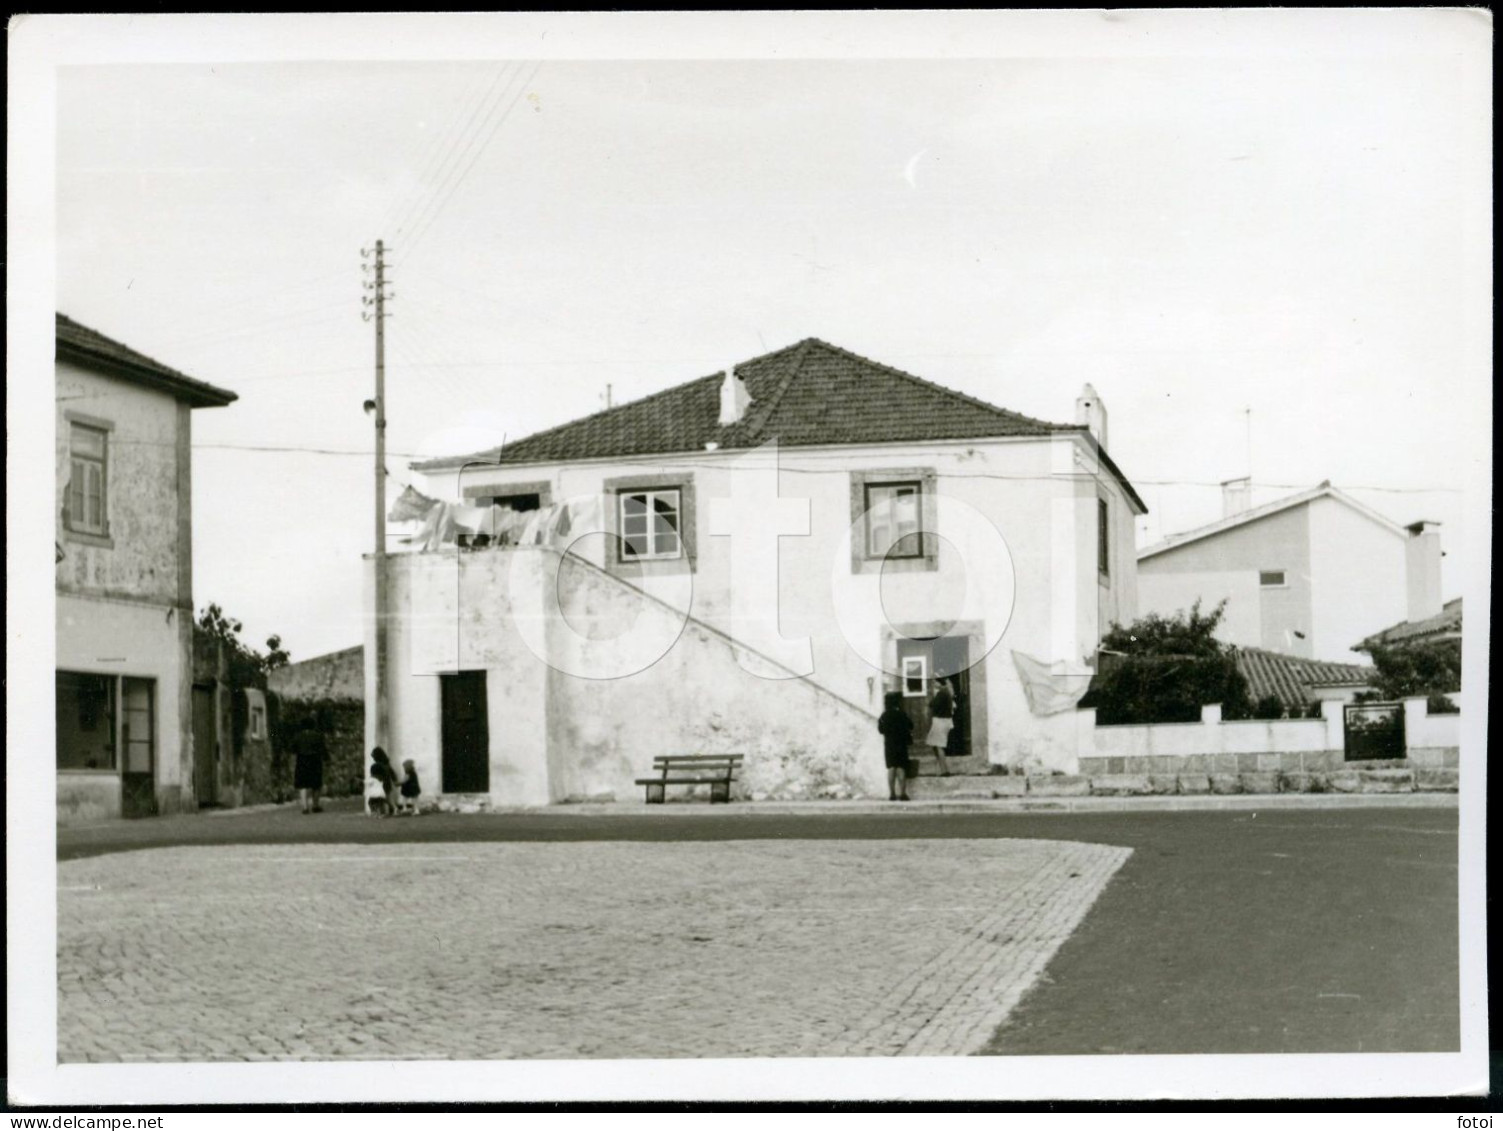 1961 ORIGINAL AMATEUR PHOTO FOTO COSTA CAPARICA ALMADA PORTUGAL AT398 - Places